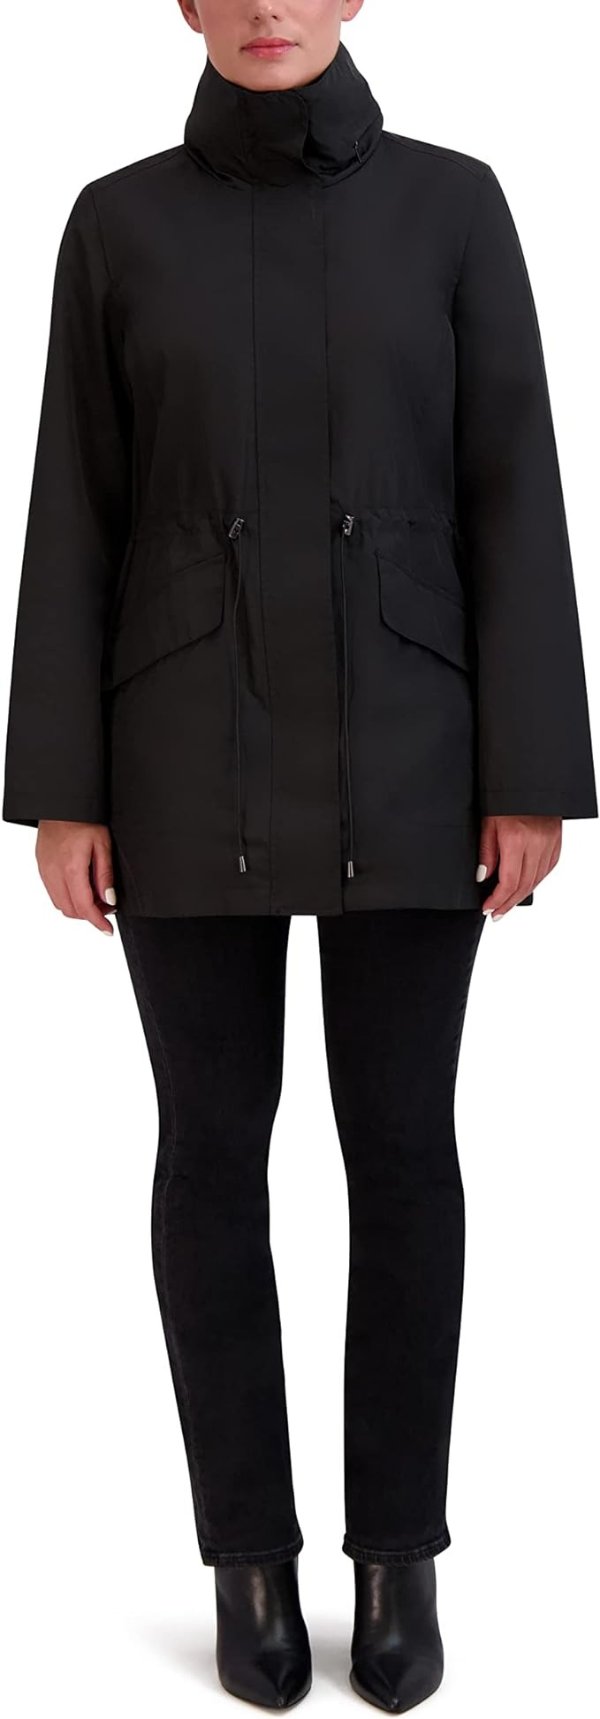 Women's Adjustable Unlined Packable Coat